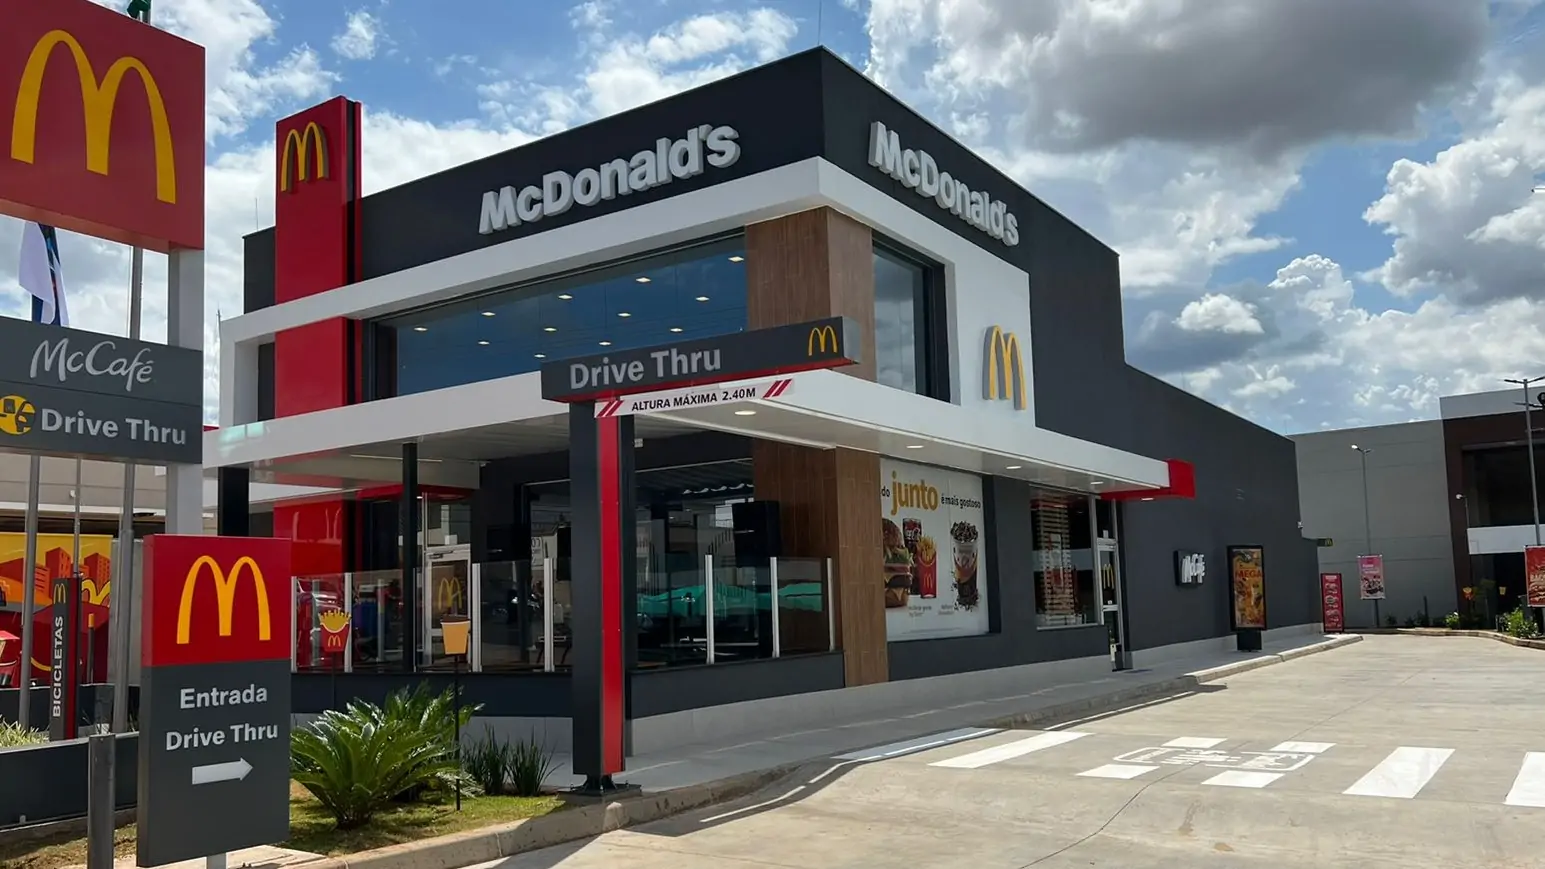 Oportunidades Profissionais na McDonald’s: Vagas Abertas, Salários Anuais e Colaborações Estratégicas